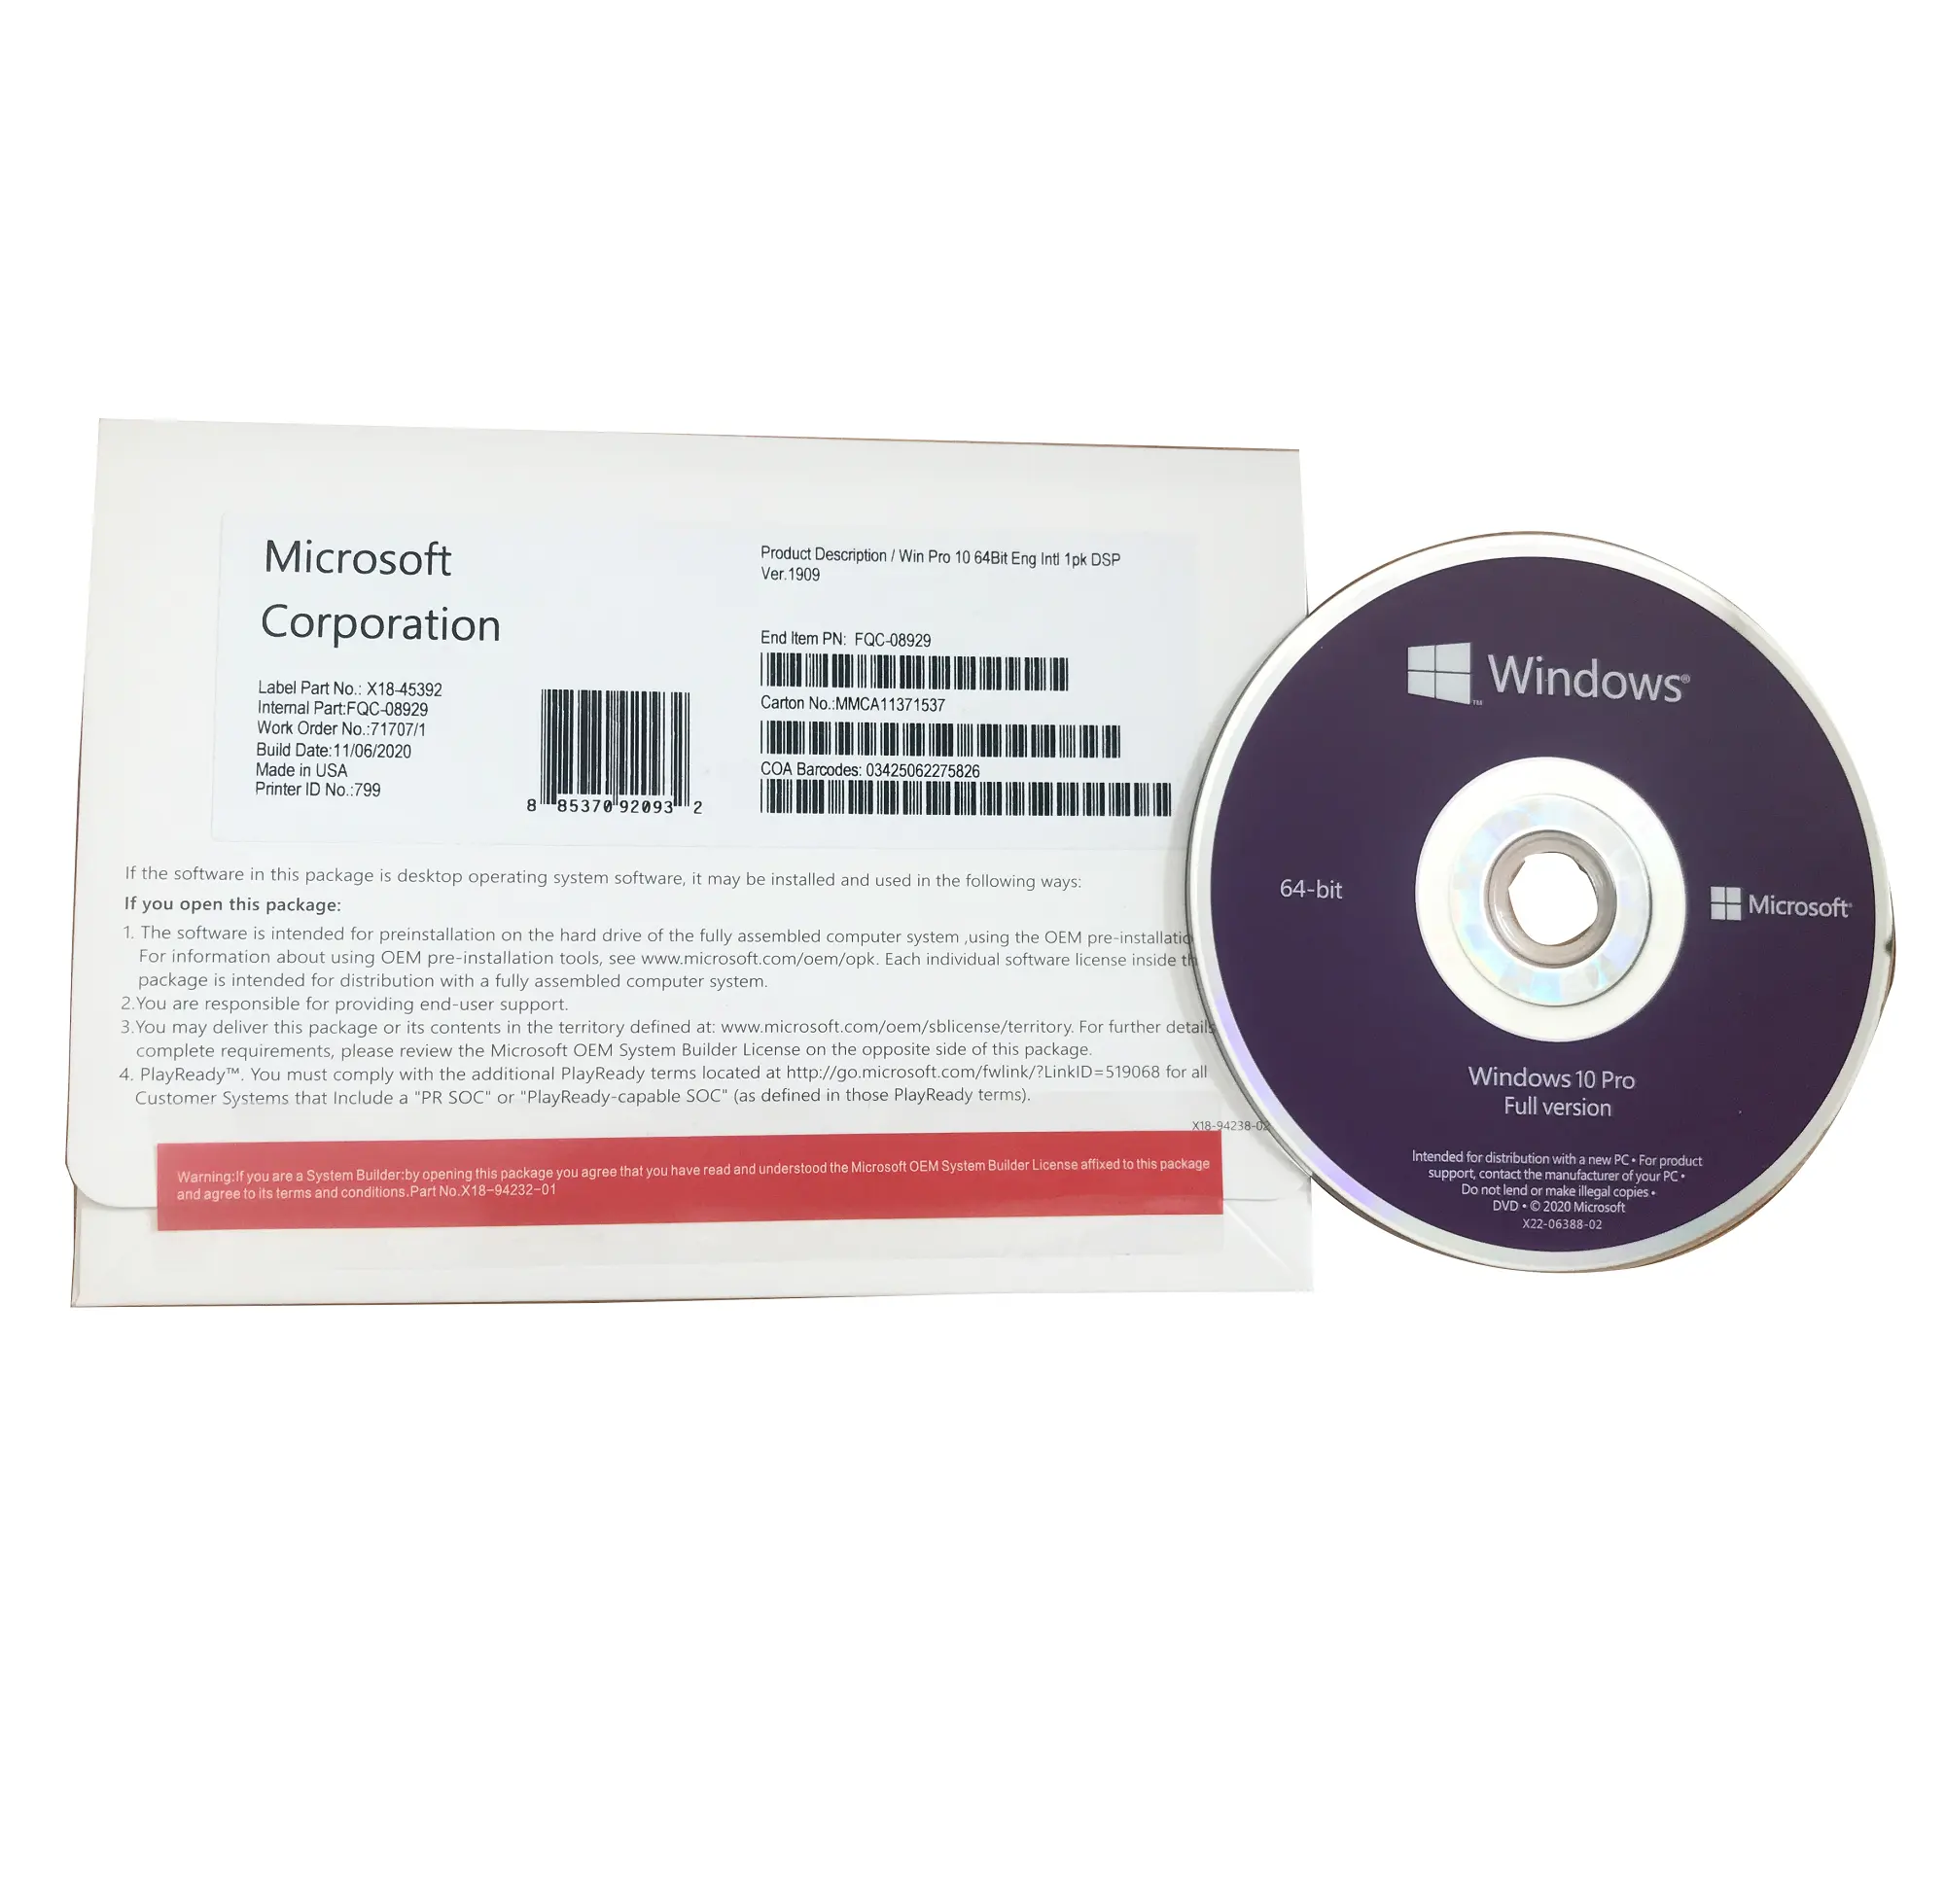 Clave de Activación Original para DVD, licencia de por vida, OEM, Windows 10, 64 bits, 1 unidad en inglés